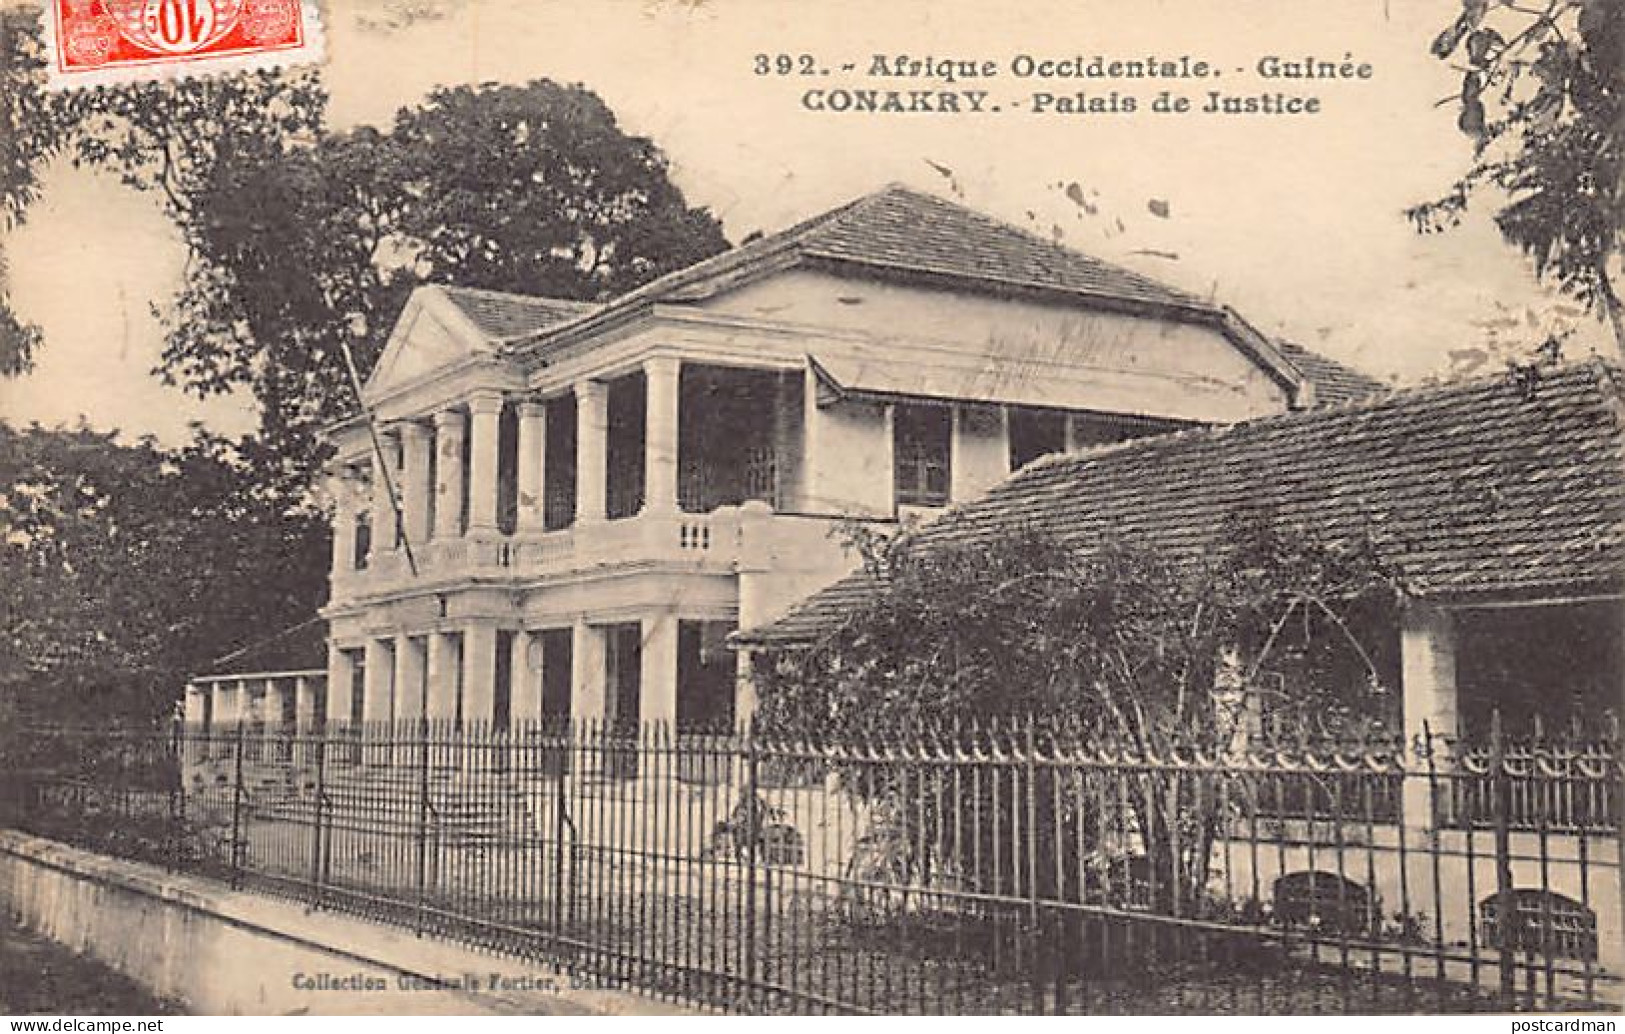 Guinée - CONAKRY - Palais de justice - Ed. Fortier 392